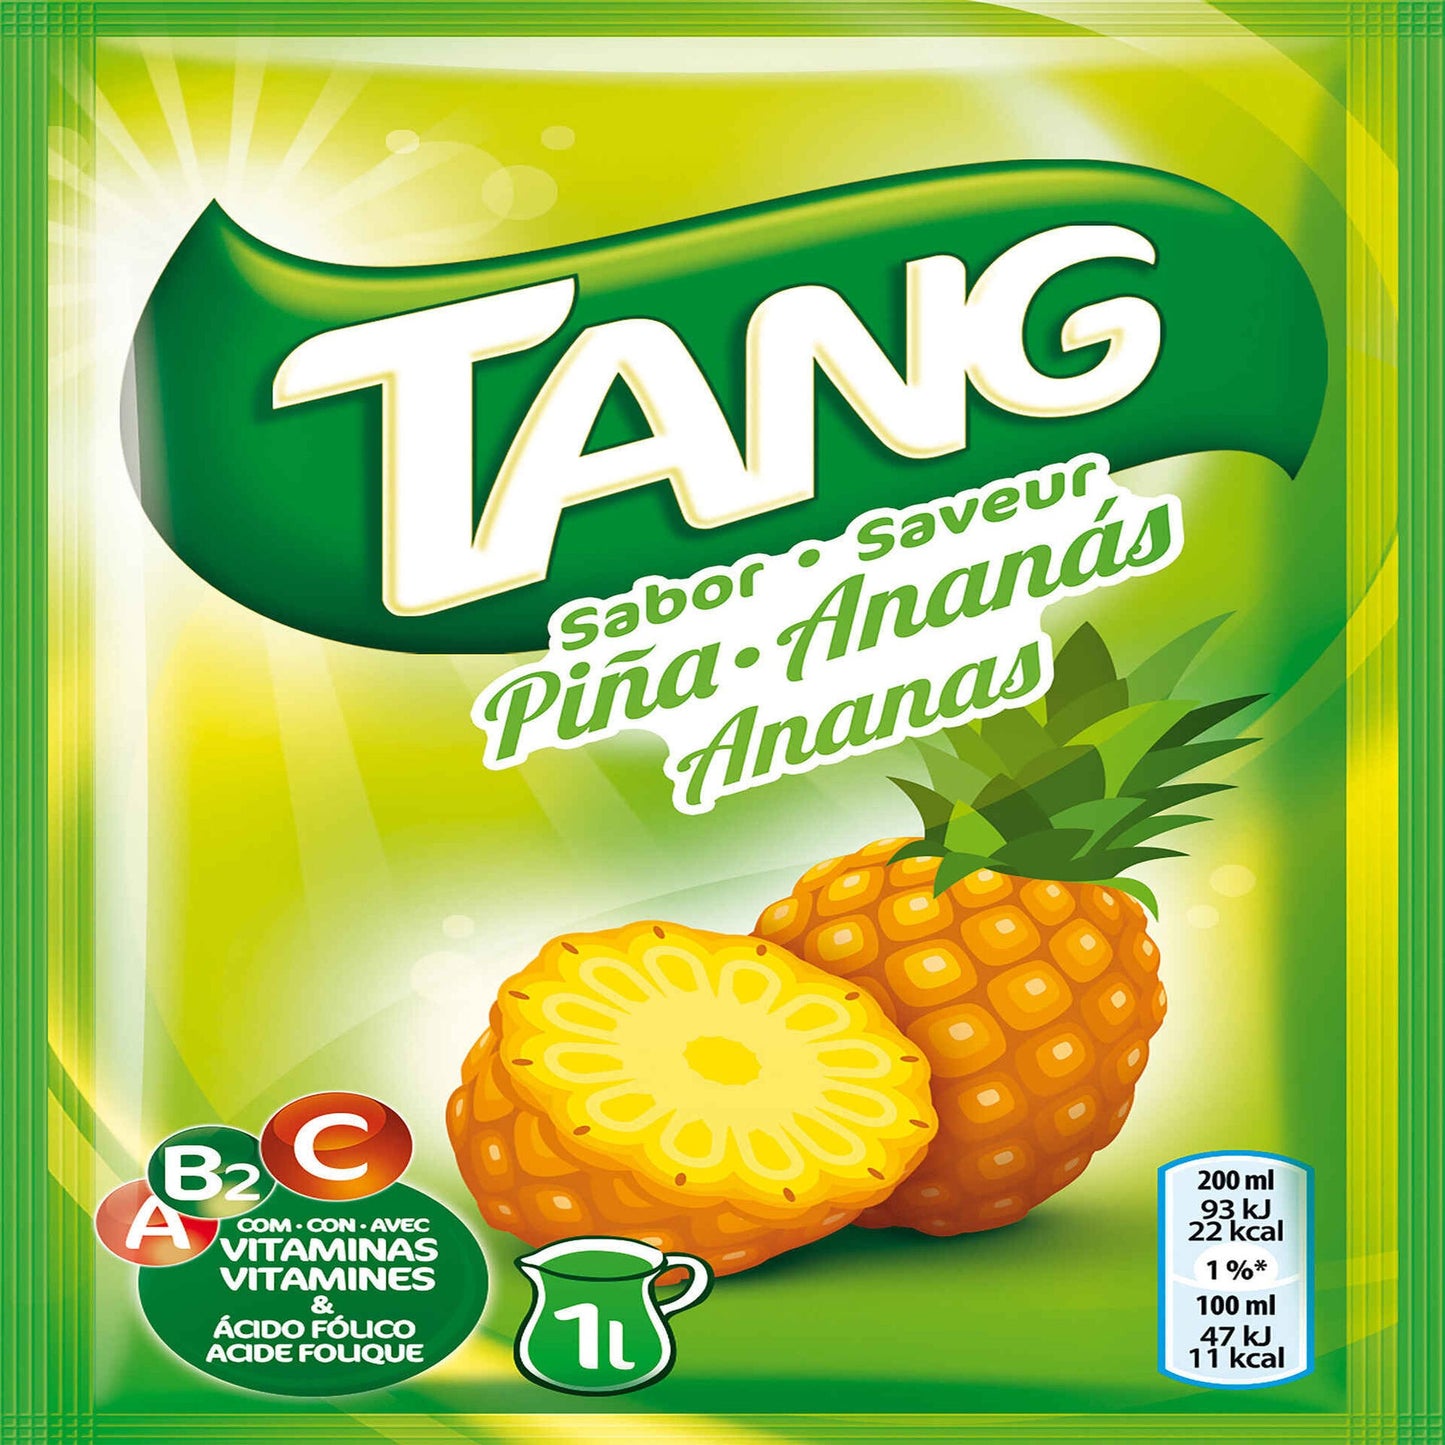 Refresco em Pó de Abacaxi Tang 30 gramas